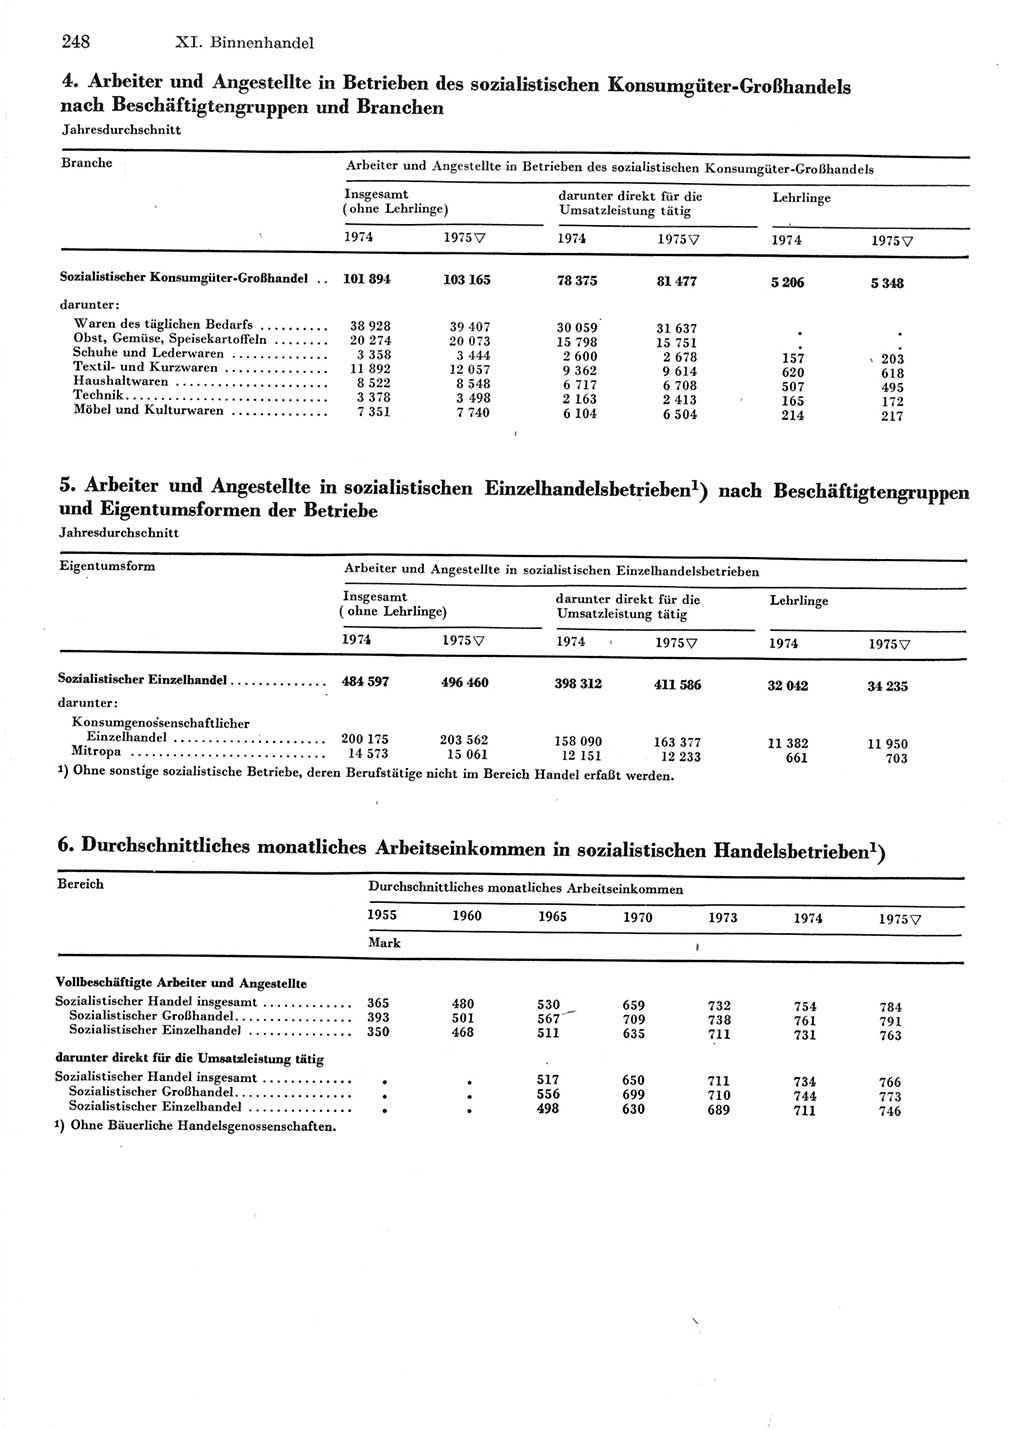 Statistisches Jahrbuch der Deutschen Demokratischen Republik (DDR) 1976, Seite 248 (Stat. Jb. DDR 1976, S. 248)